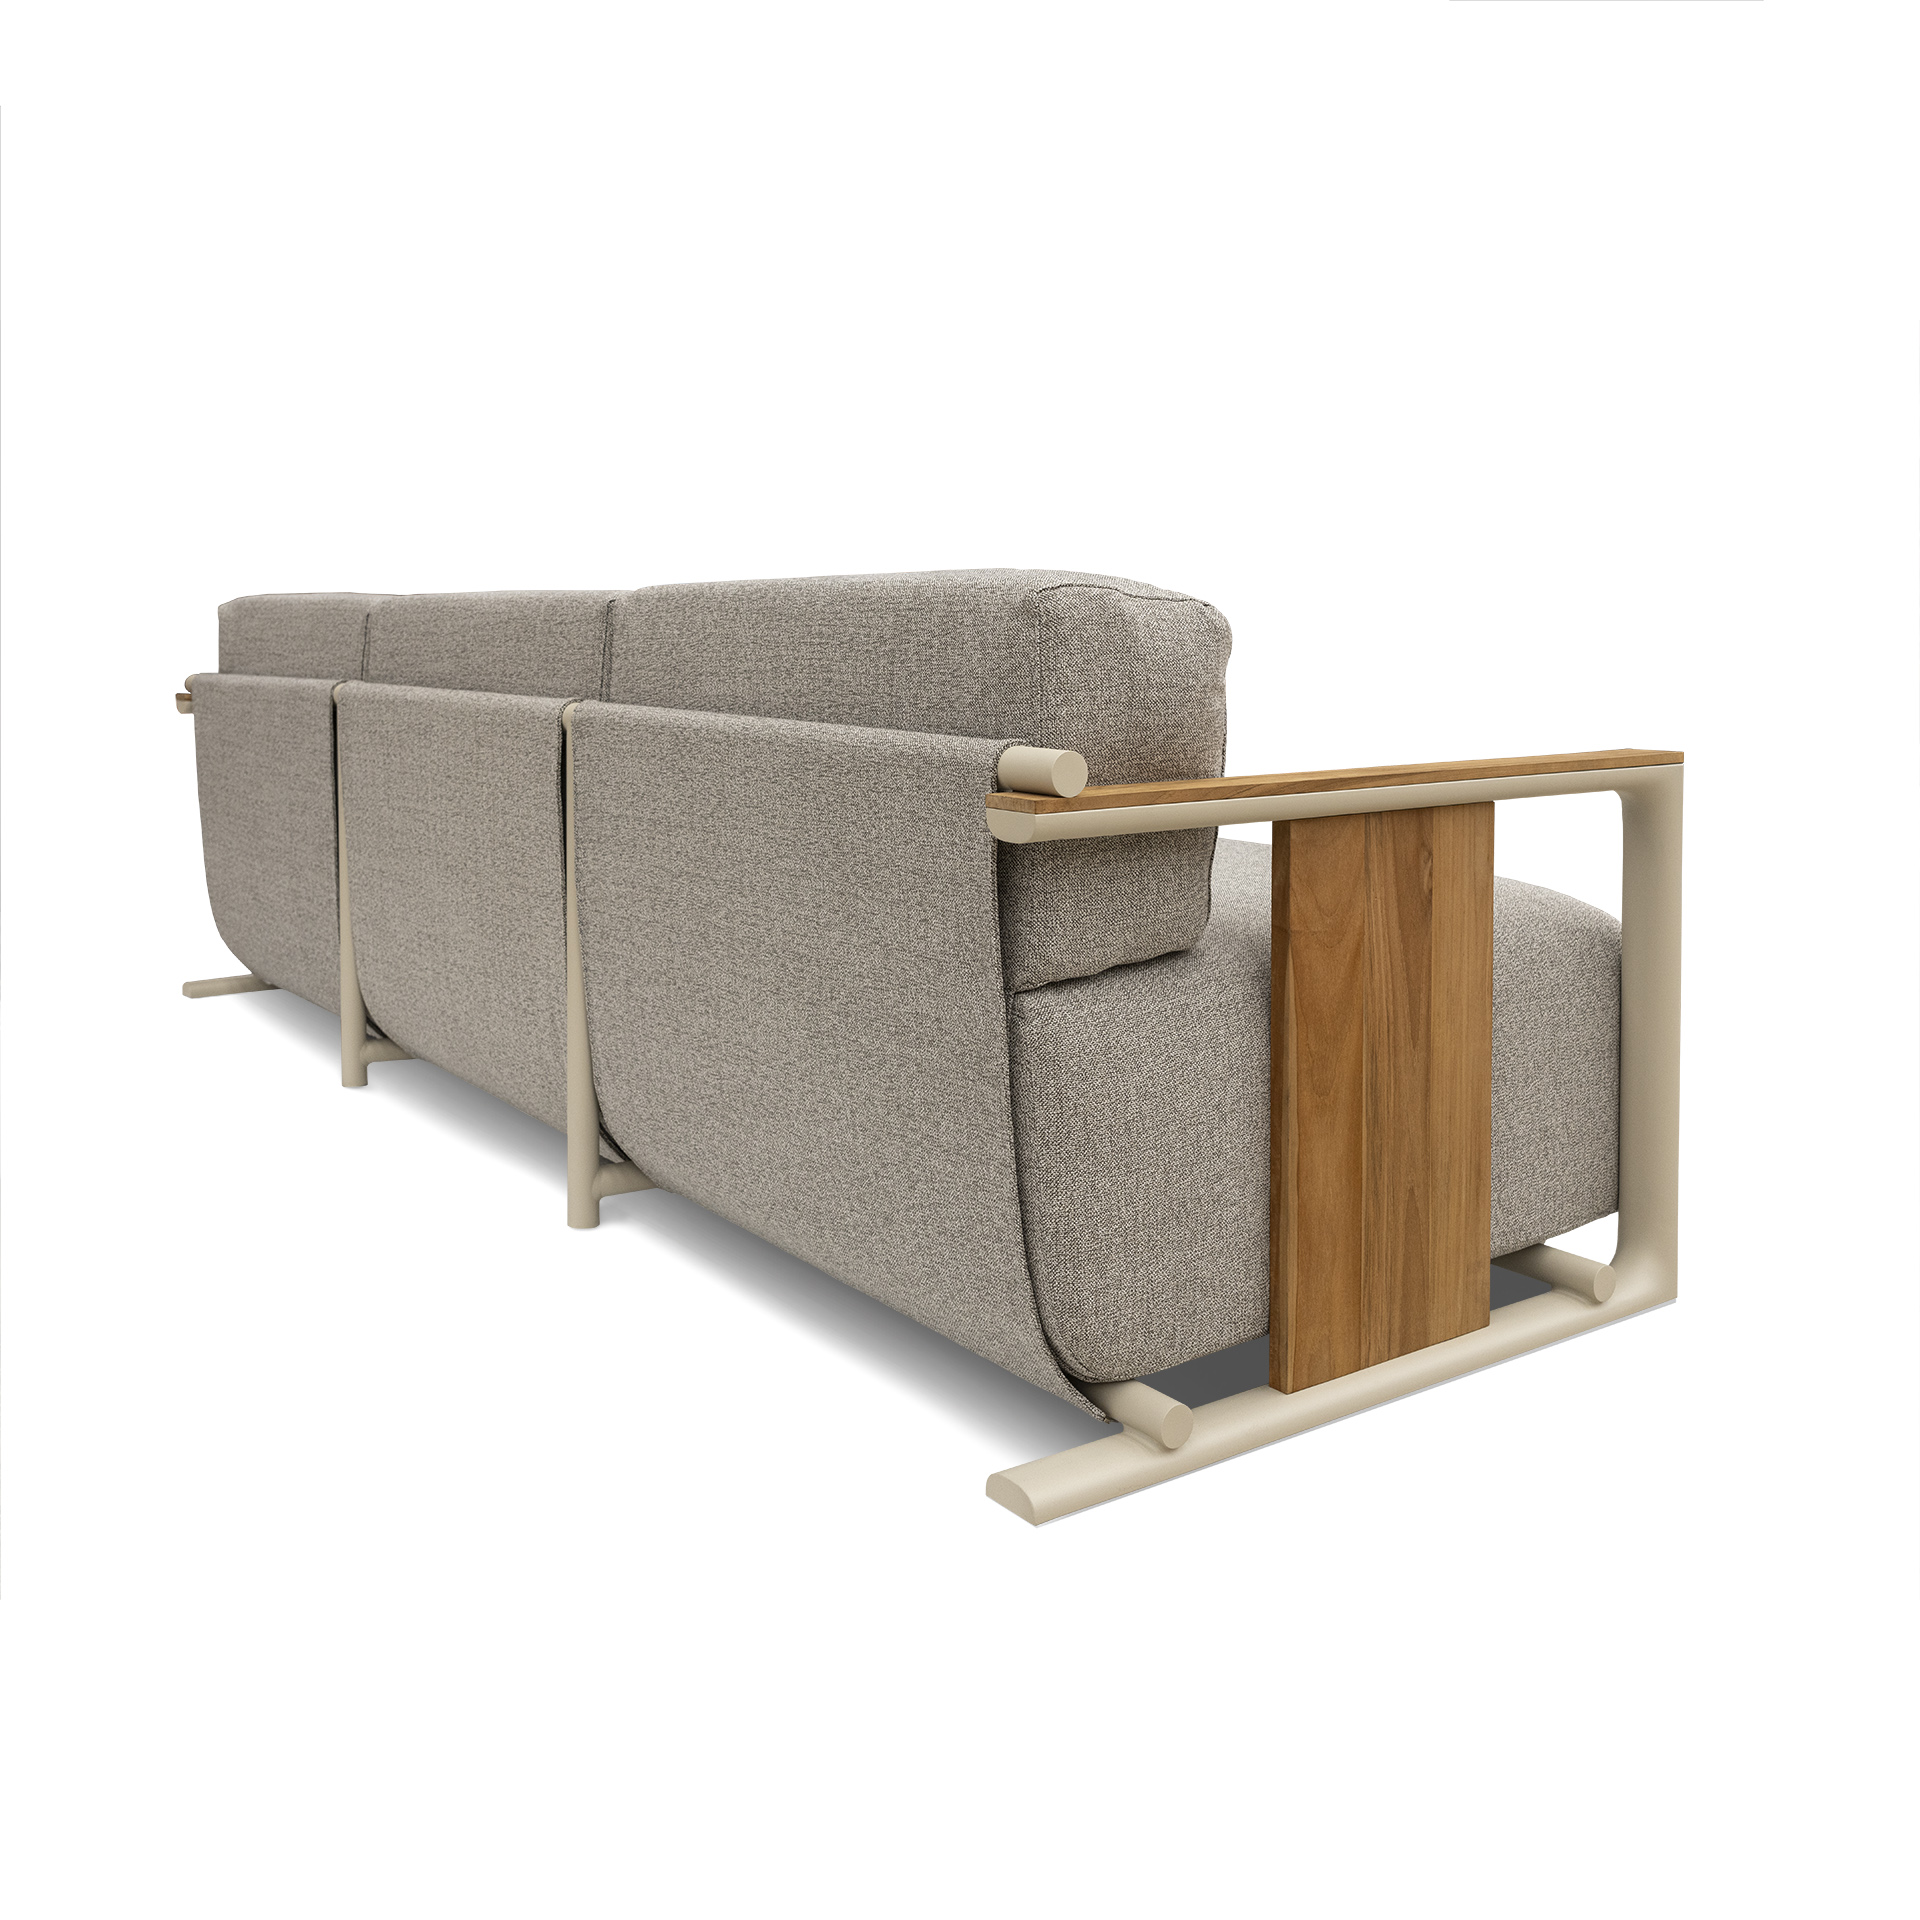 Vondom Tulum designer outdoor sofa 3 places eugeni quitllet 5 